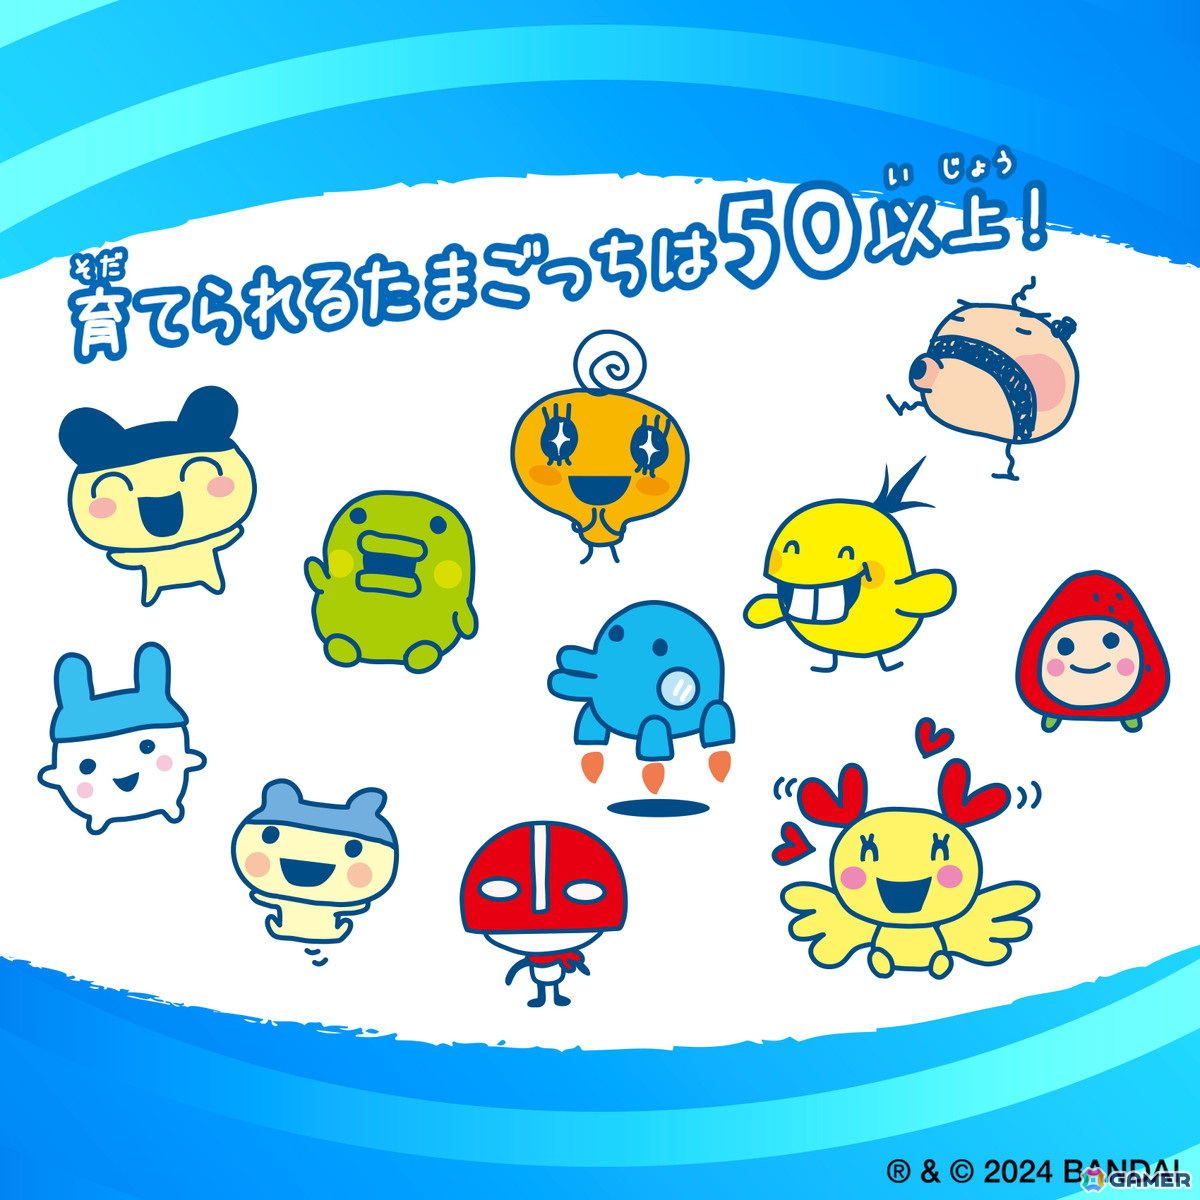 「祝ケータイかいツー！たまごっちプラス」20周年記念リバイバル版「Tamagotchi Connection」が8月3日に発売！懐かしの赤外線通信で遊べる
「ふらわー」「めろんソーダ」など4種のデザインが令和風にアレンジ

gamer.ne.jp/news/202405140…

#Tamagotchi #たまごっち